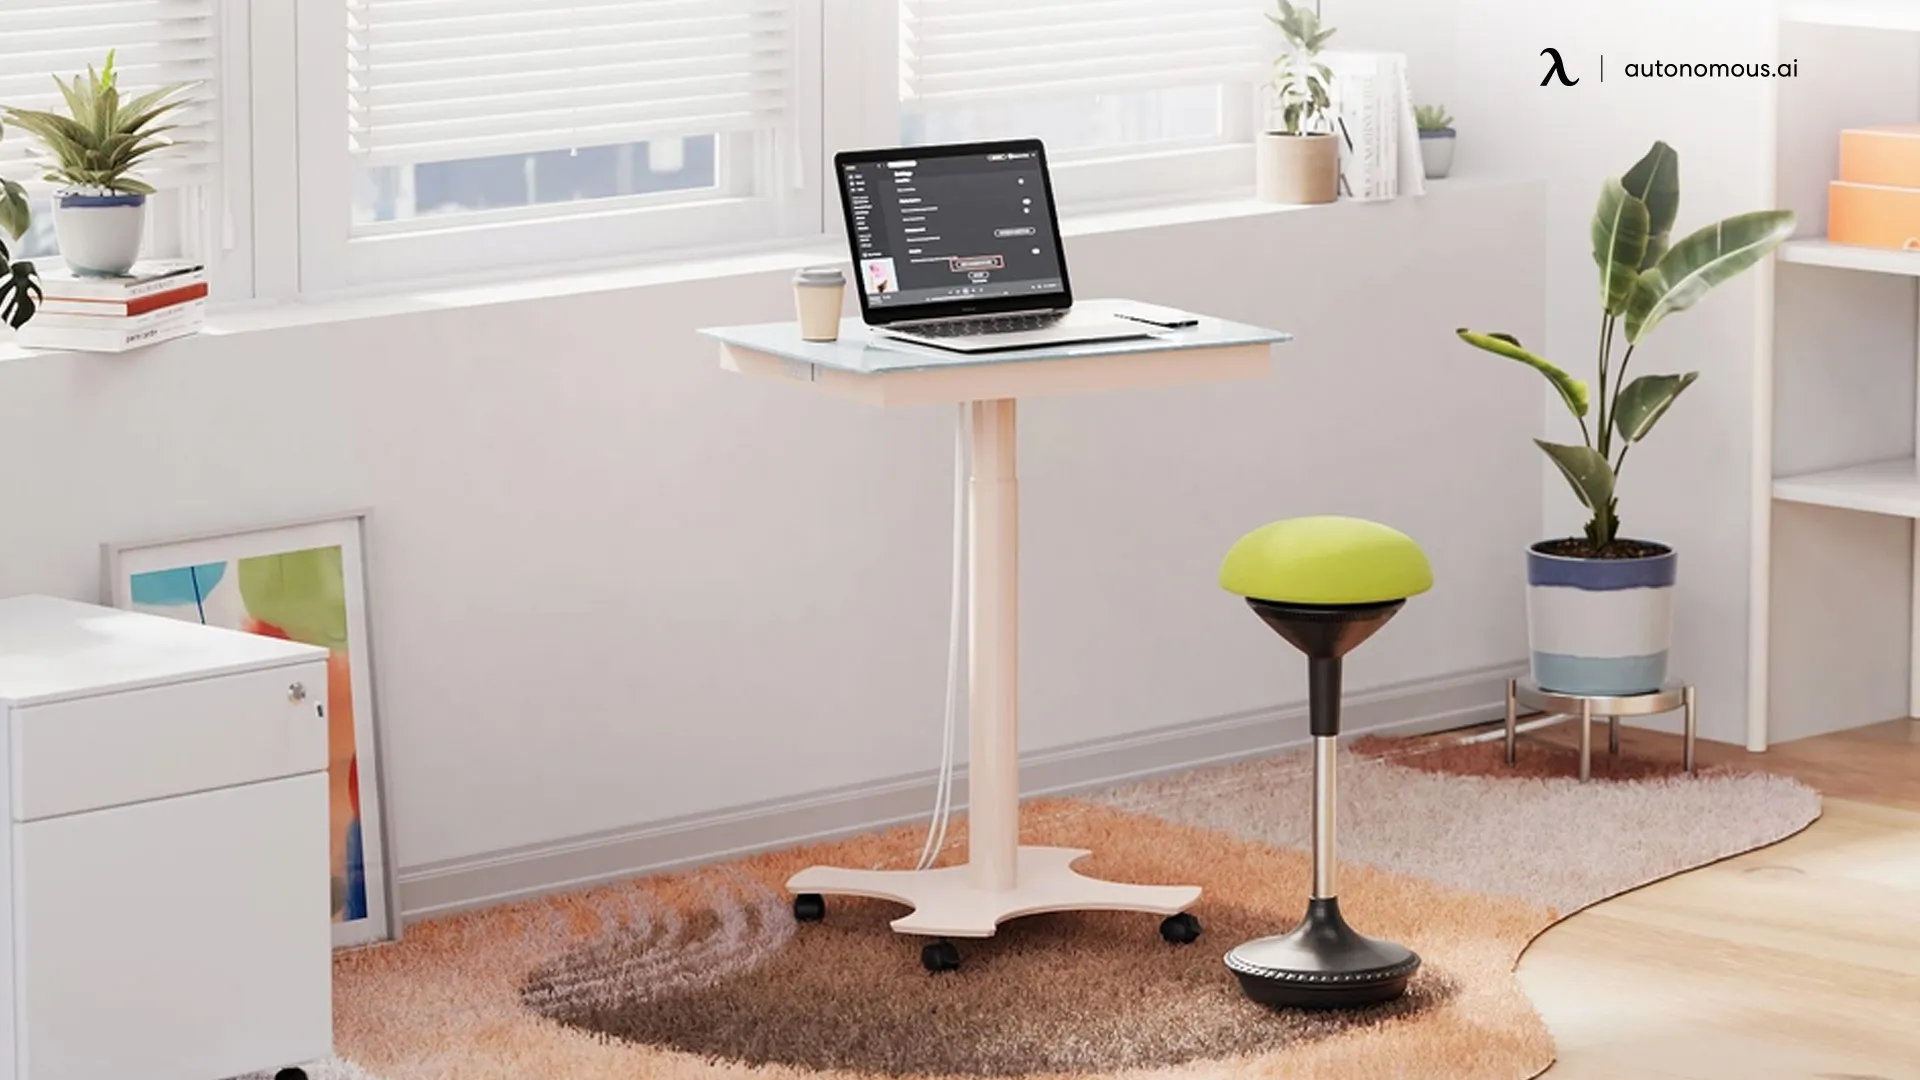 Autonomous Desk mini - standing desk with wireless charger